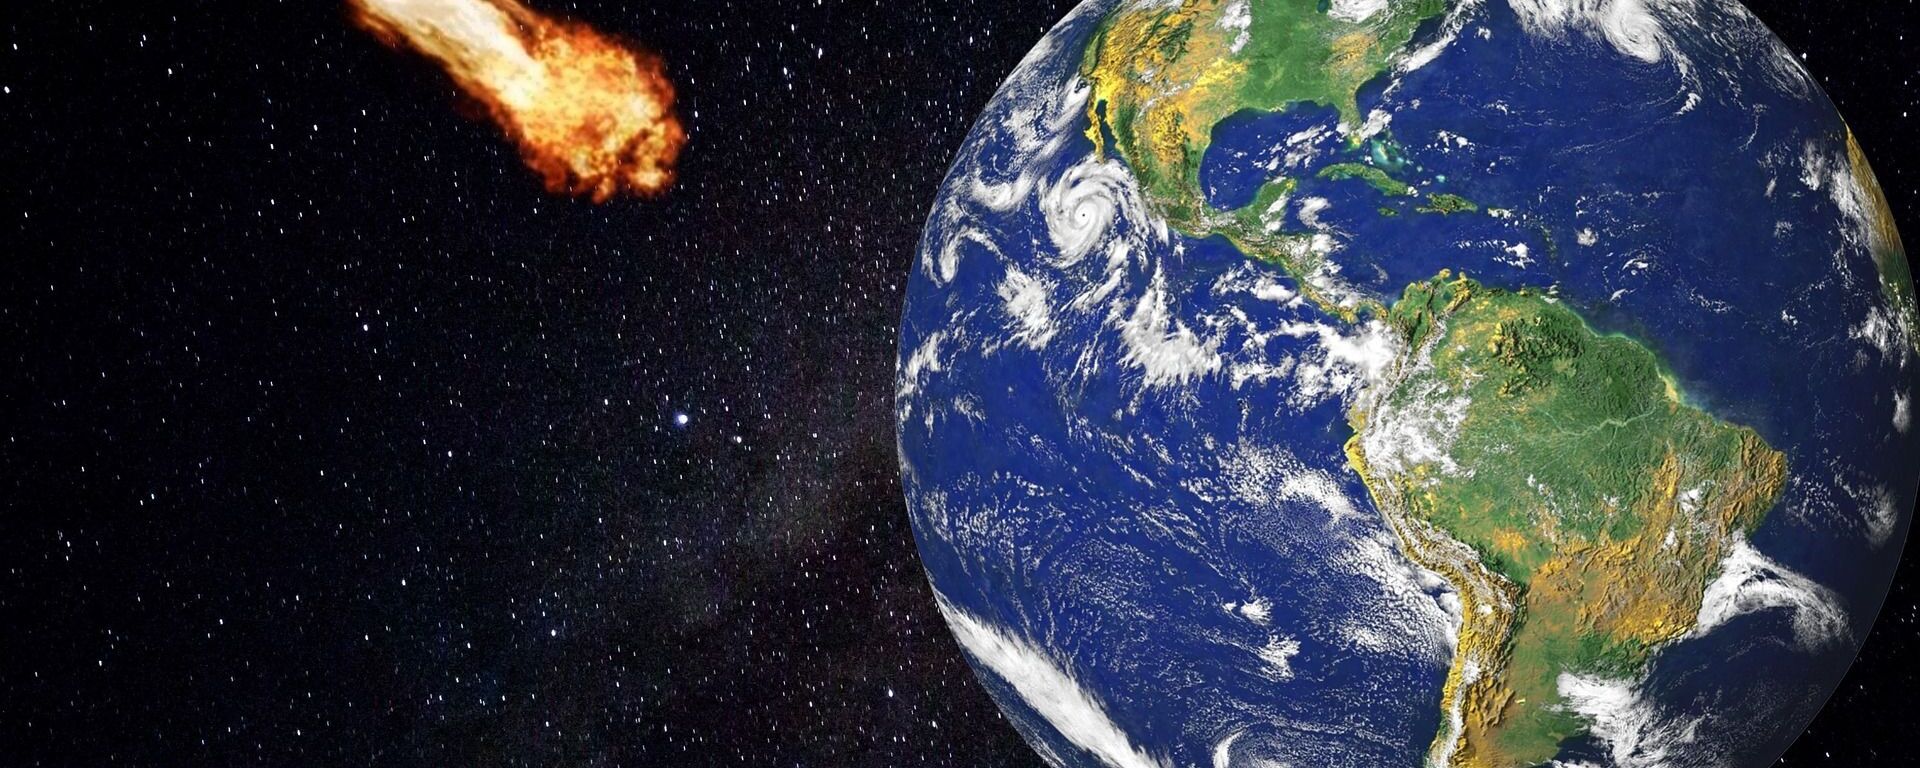 Un meteorito a punto de impactar contra la Tierra - Sputnik Mundo, 1920, 15.09.2020